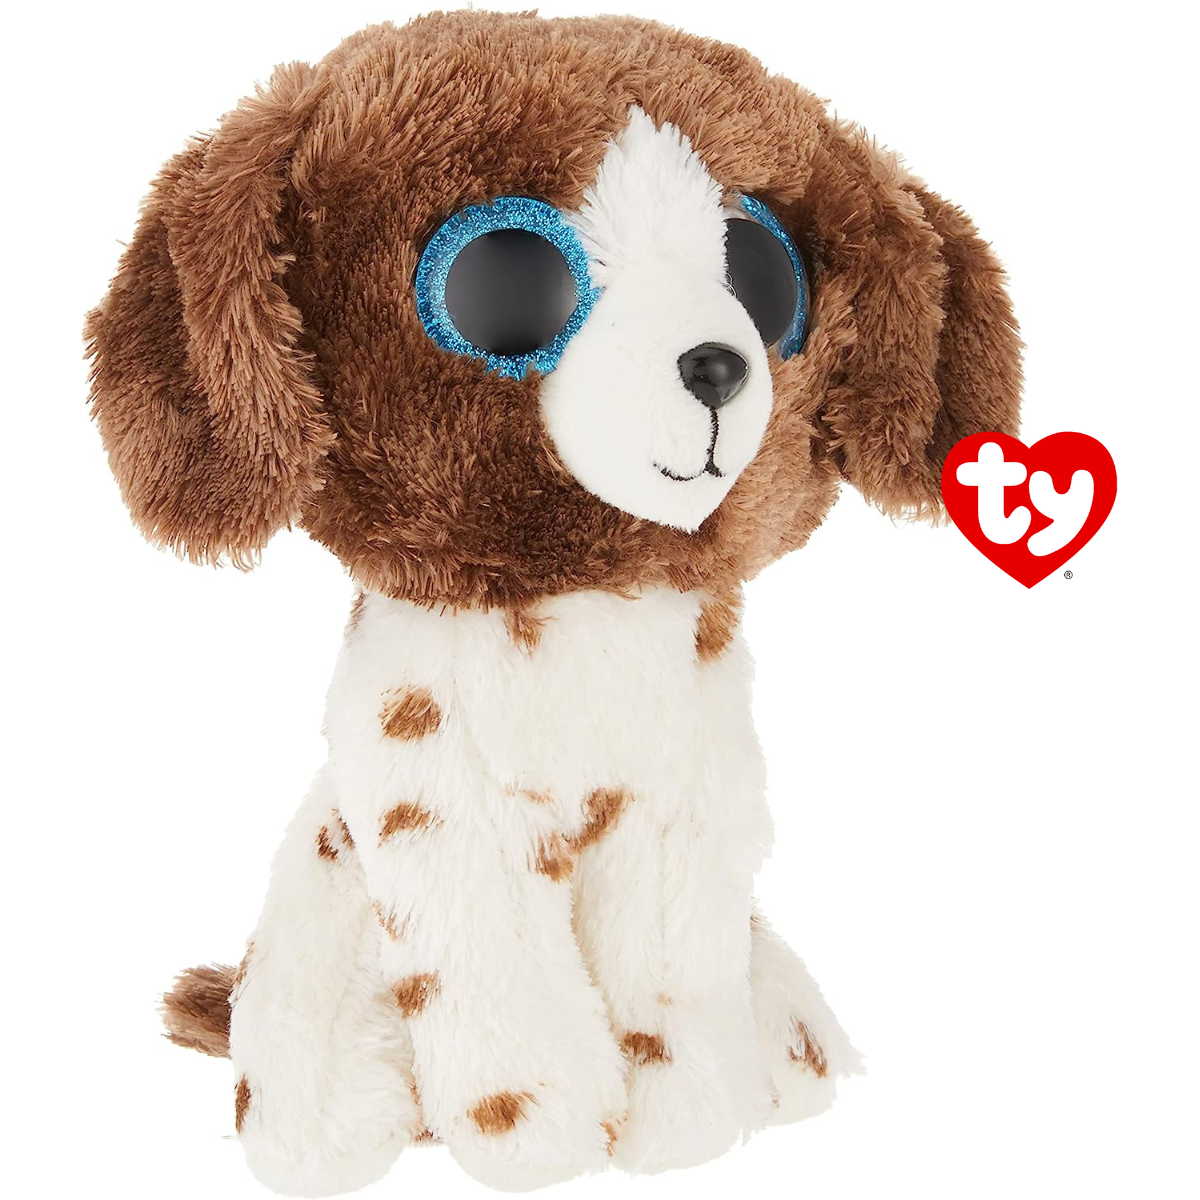 Ty - peluche - beanie boos - cane - muddles - bianco e marrone - cagnolino con occhioni azzurri glitter - il peluche con gli occhi grandi scintillanti - 15 cm - 36249 - TY